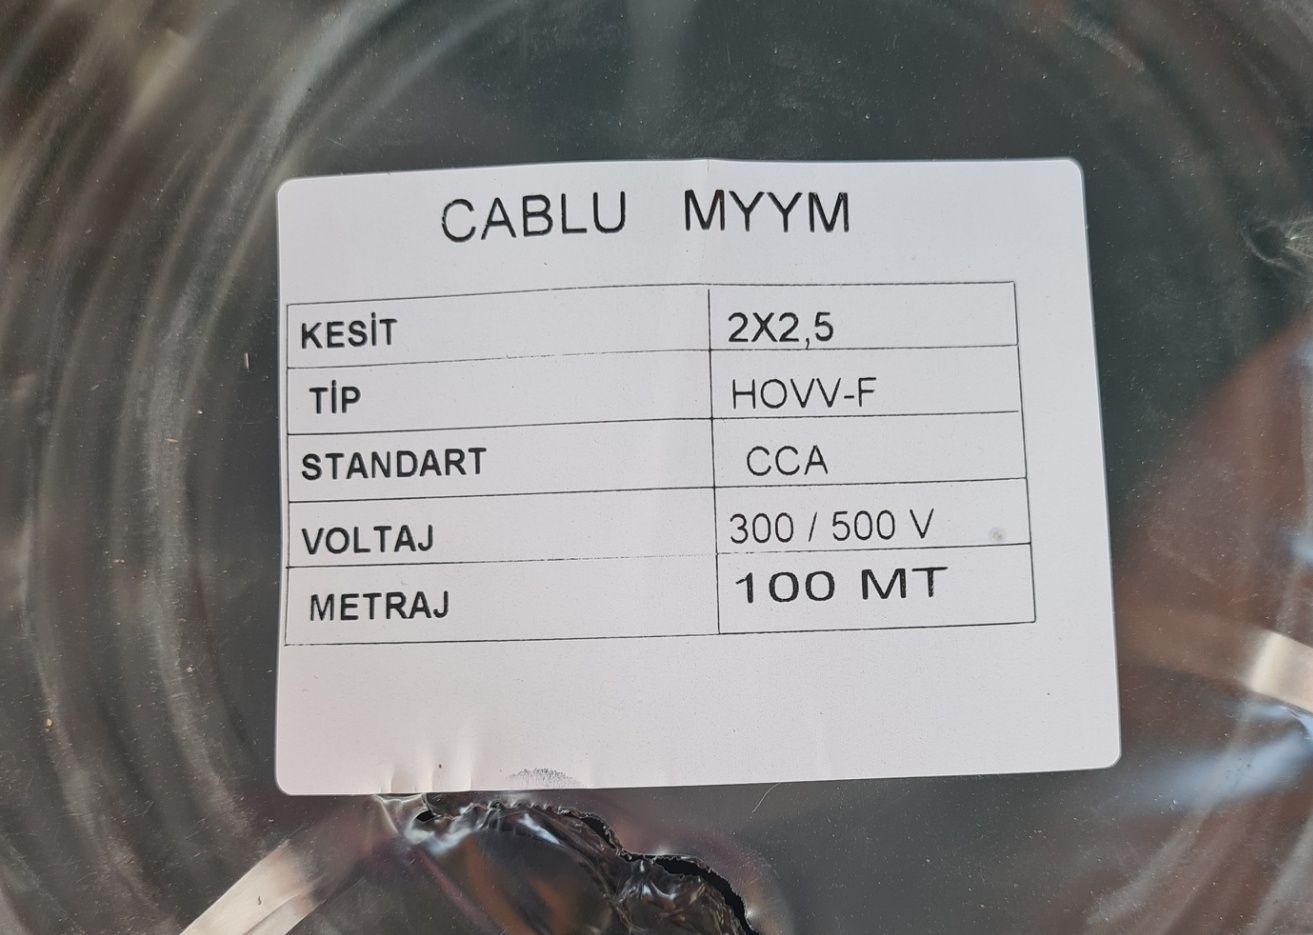 Cablu Electric 3x2,5/ 3x1,5 / 2x2,5/ 2x1,5 100m Litat MYYM